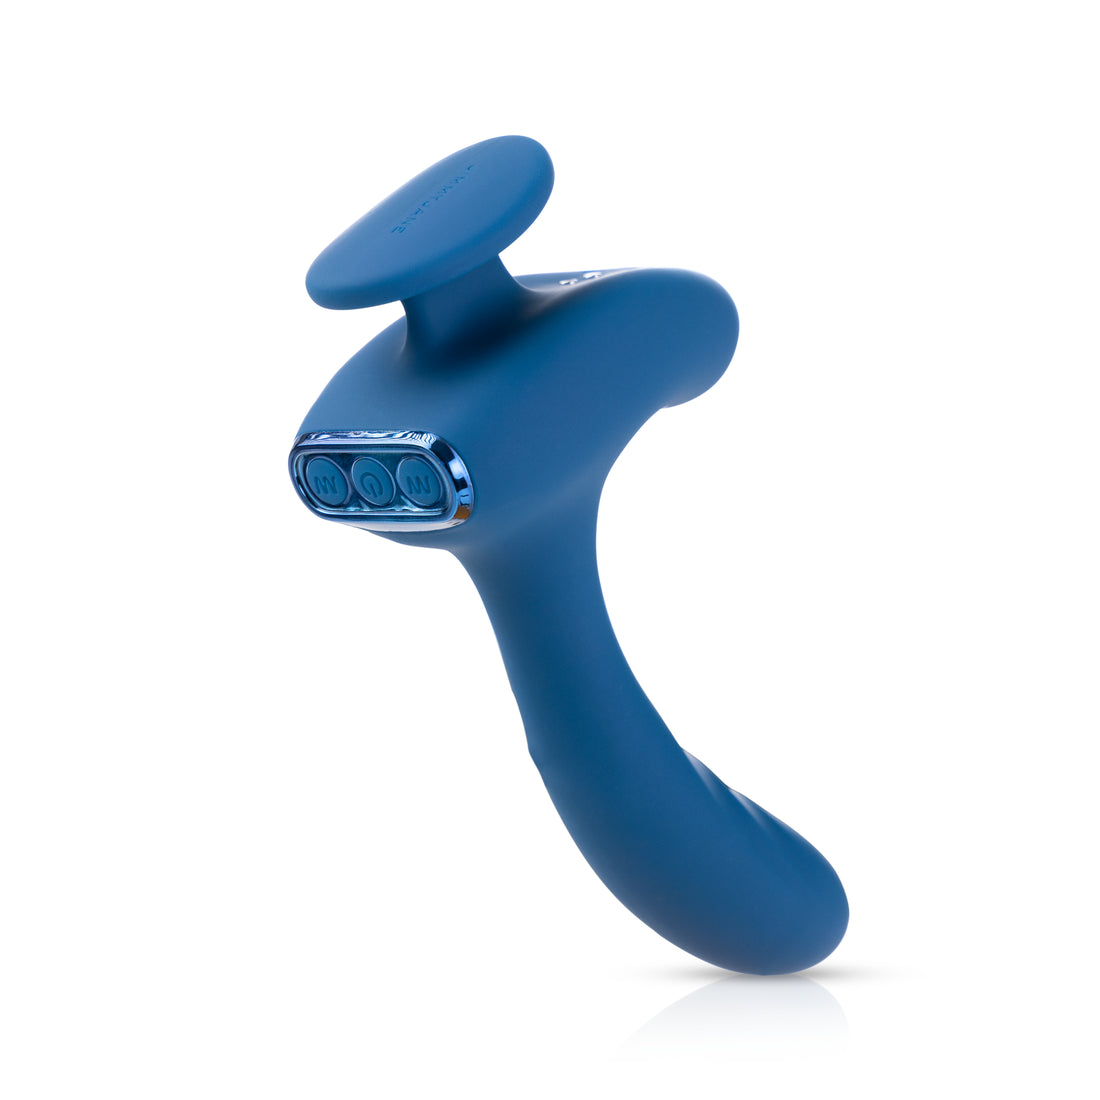 Solis™ Kyrios prostate massage silicone vibrator